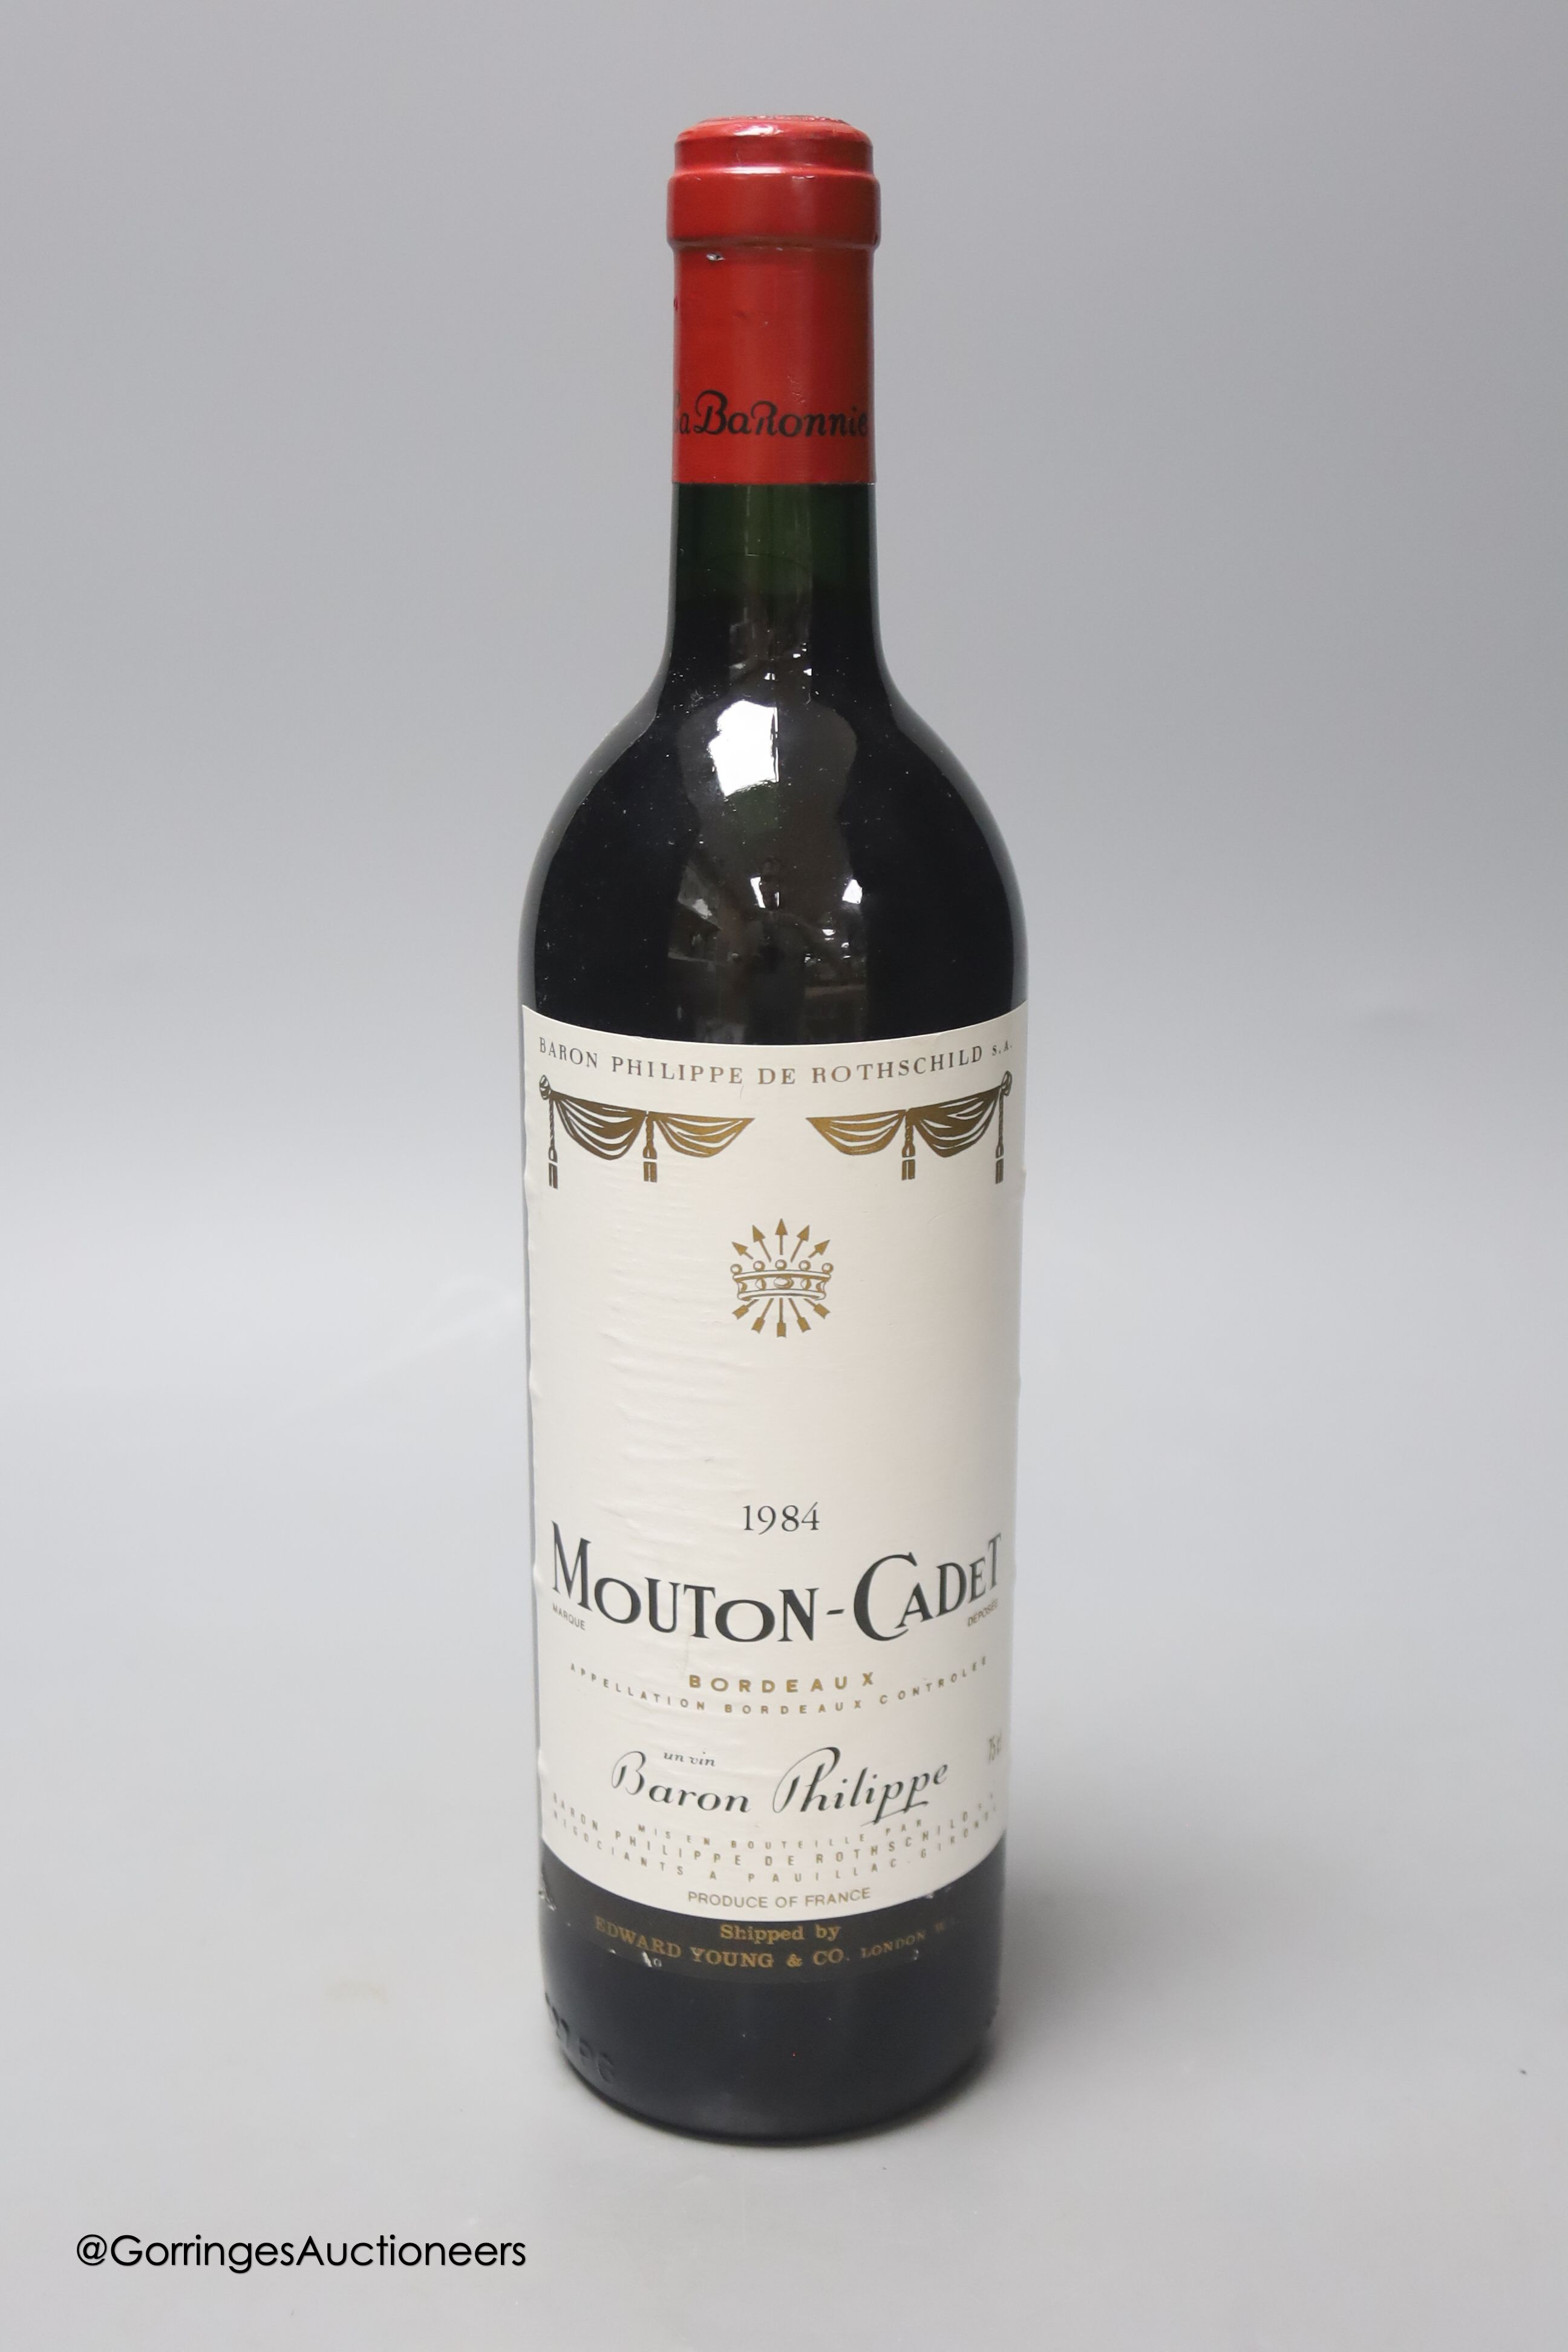 A bottle of Baron Philippe de Rothschild 1984 Mouton-cadet